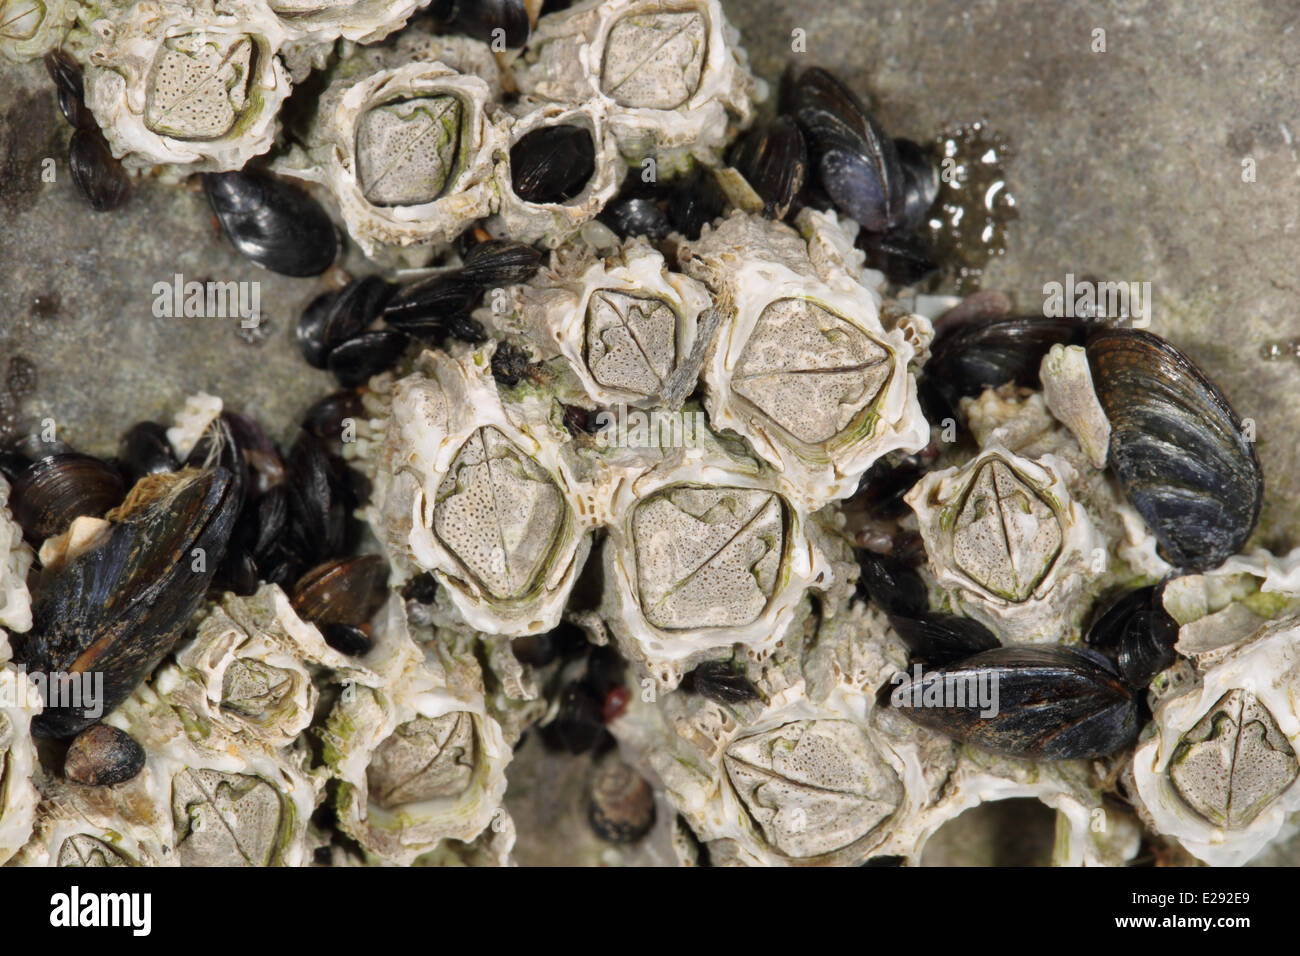 Acorn Barnacle (Semibalanus balanoides) adultes, sur un rivage rocailleux, Péninsule de Gower, West Glamorgan, Pays de Galles, Mars Banque D'Images